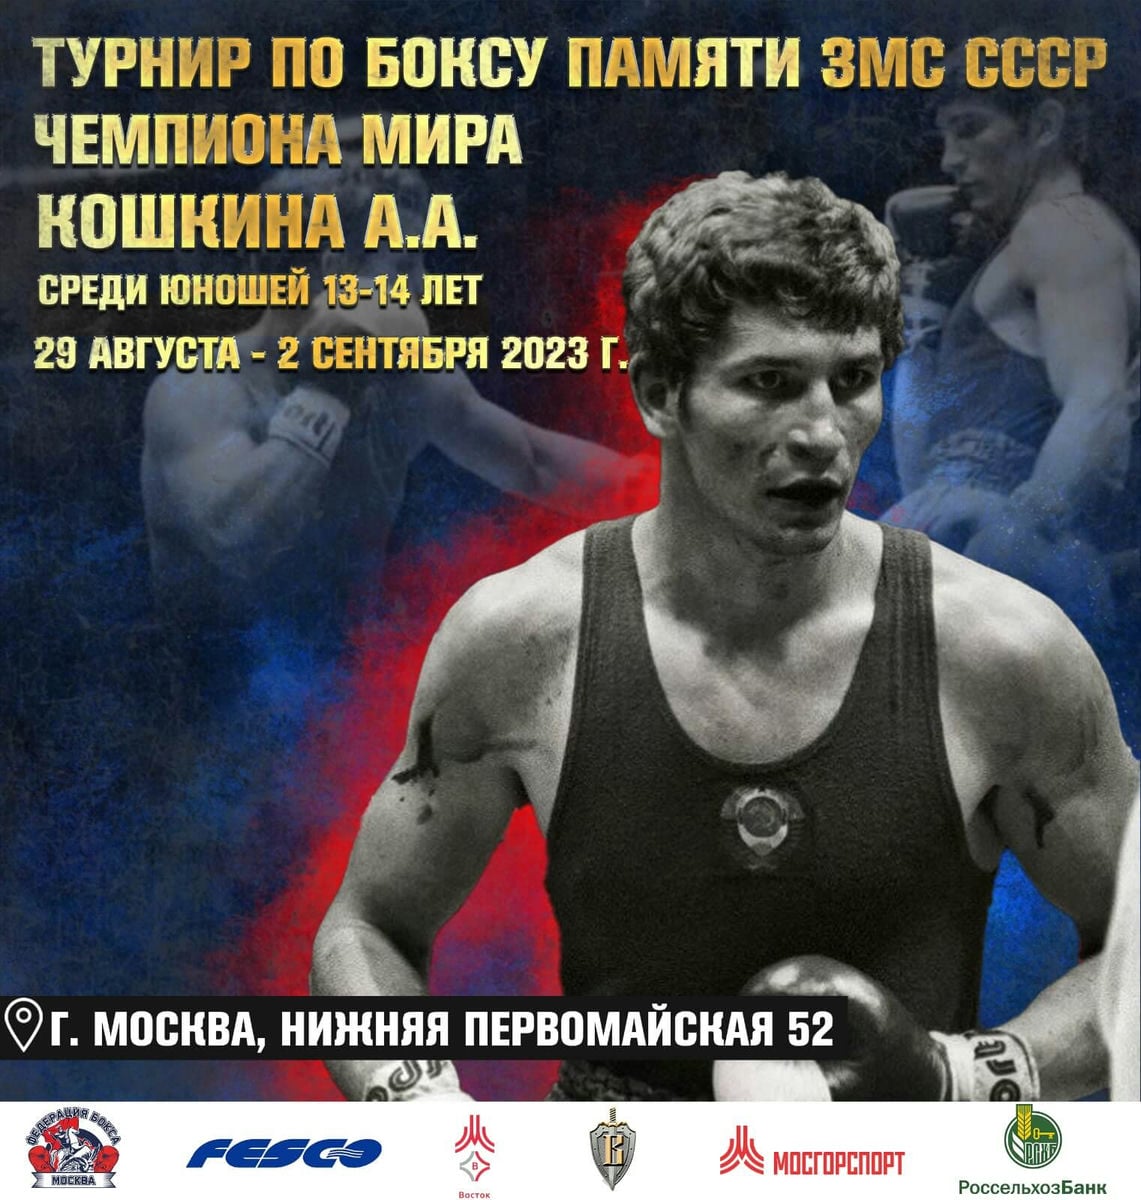 С 29 августа по 2 сентября состоится турнир по боксу, посвященный памяти чемпиона мира Александра Кошкина среди юношей 13-14 лет